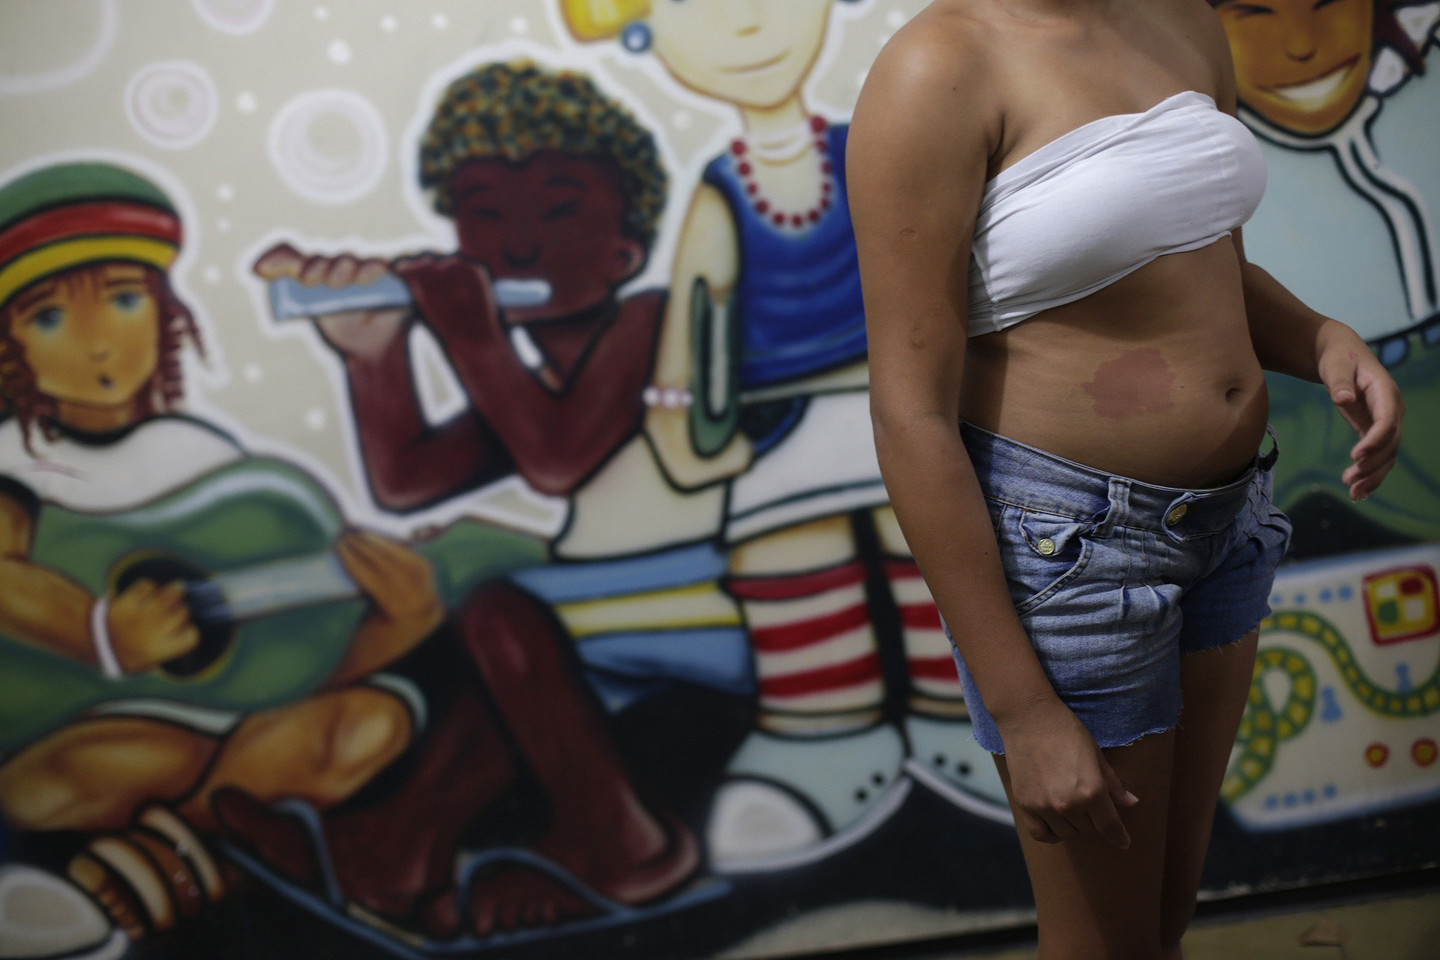 Didžiausios pasaulio sporto šventės proga Brazilijos prostitutės beveik per pusę sumažino savo paslaugų kainas.<br>Scanpix nuotr.